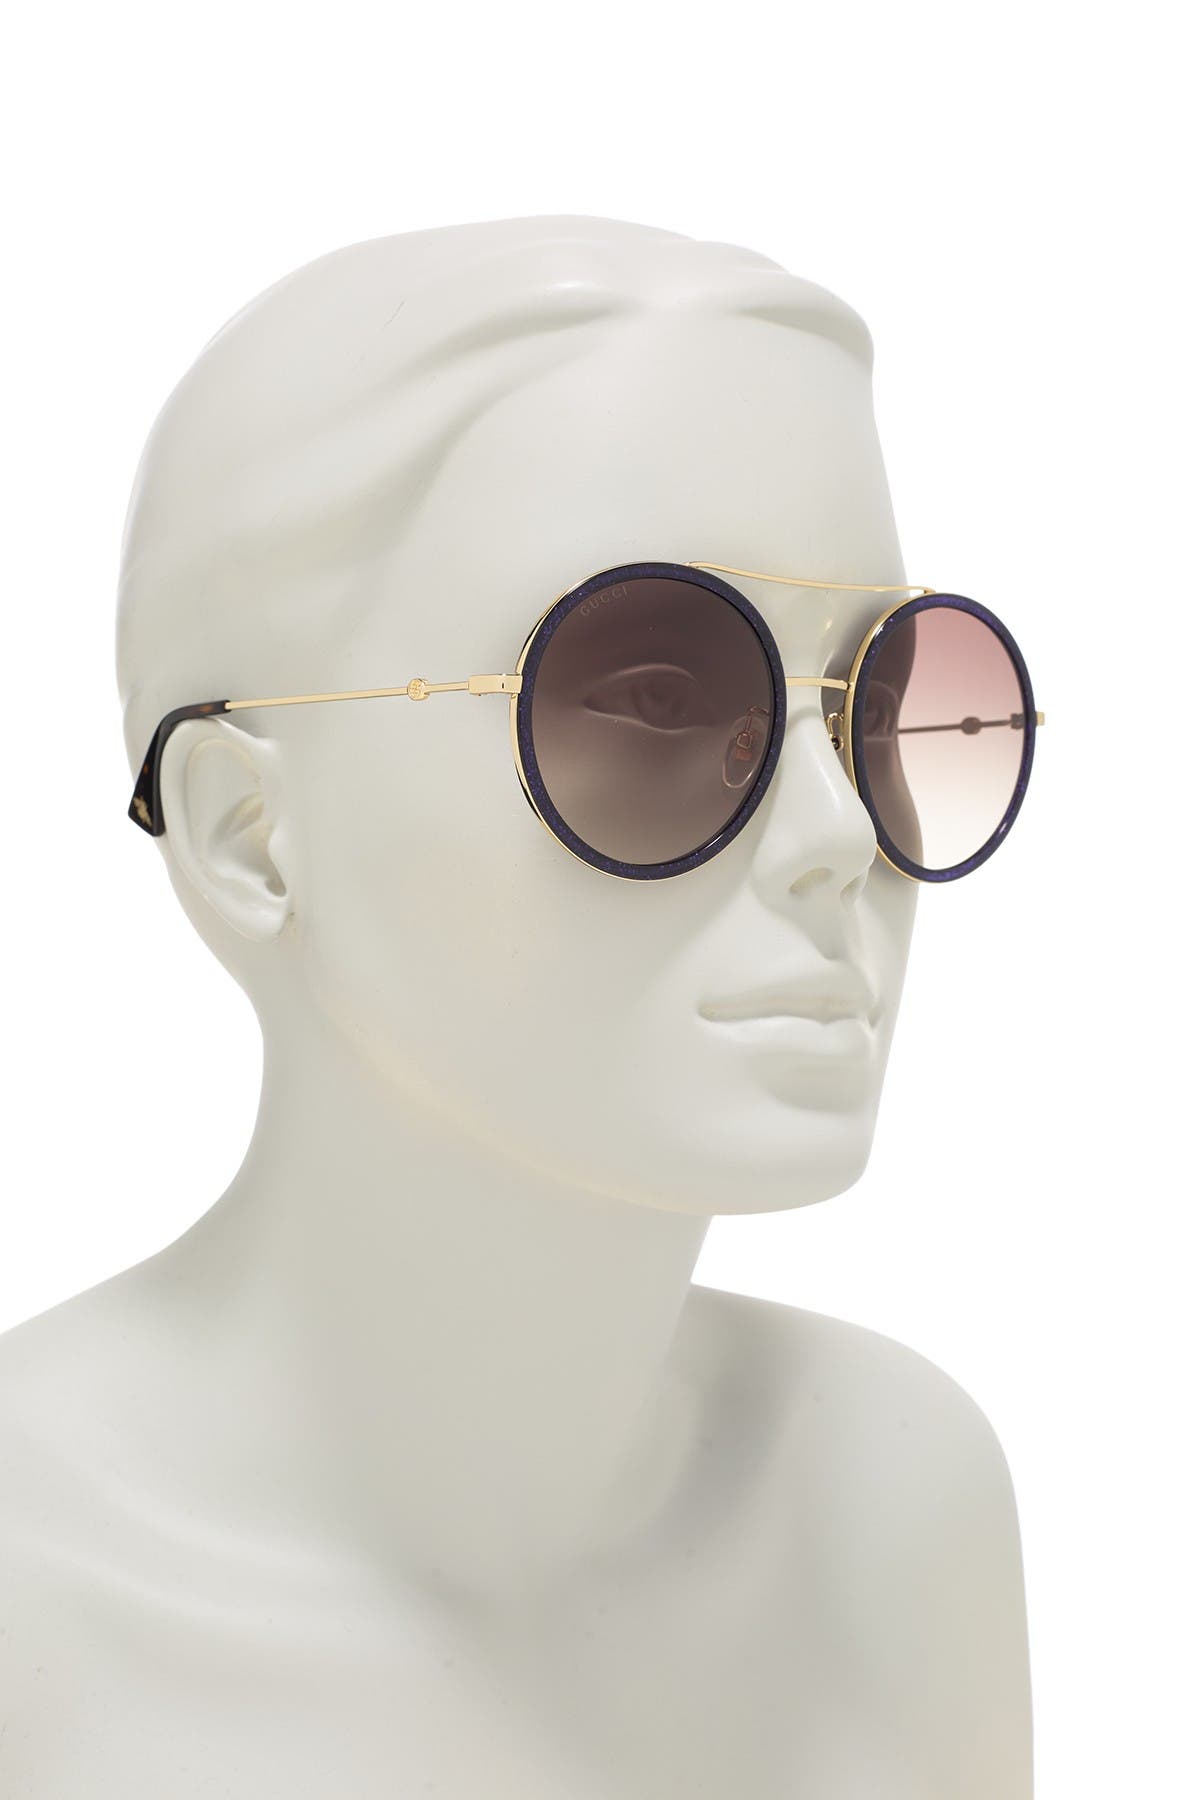 gucci 56mm round sunglasses